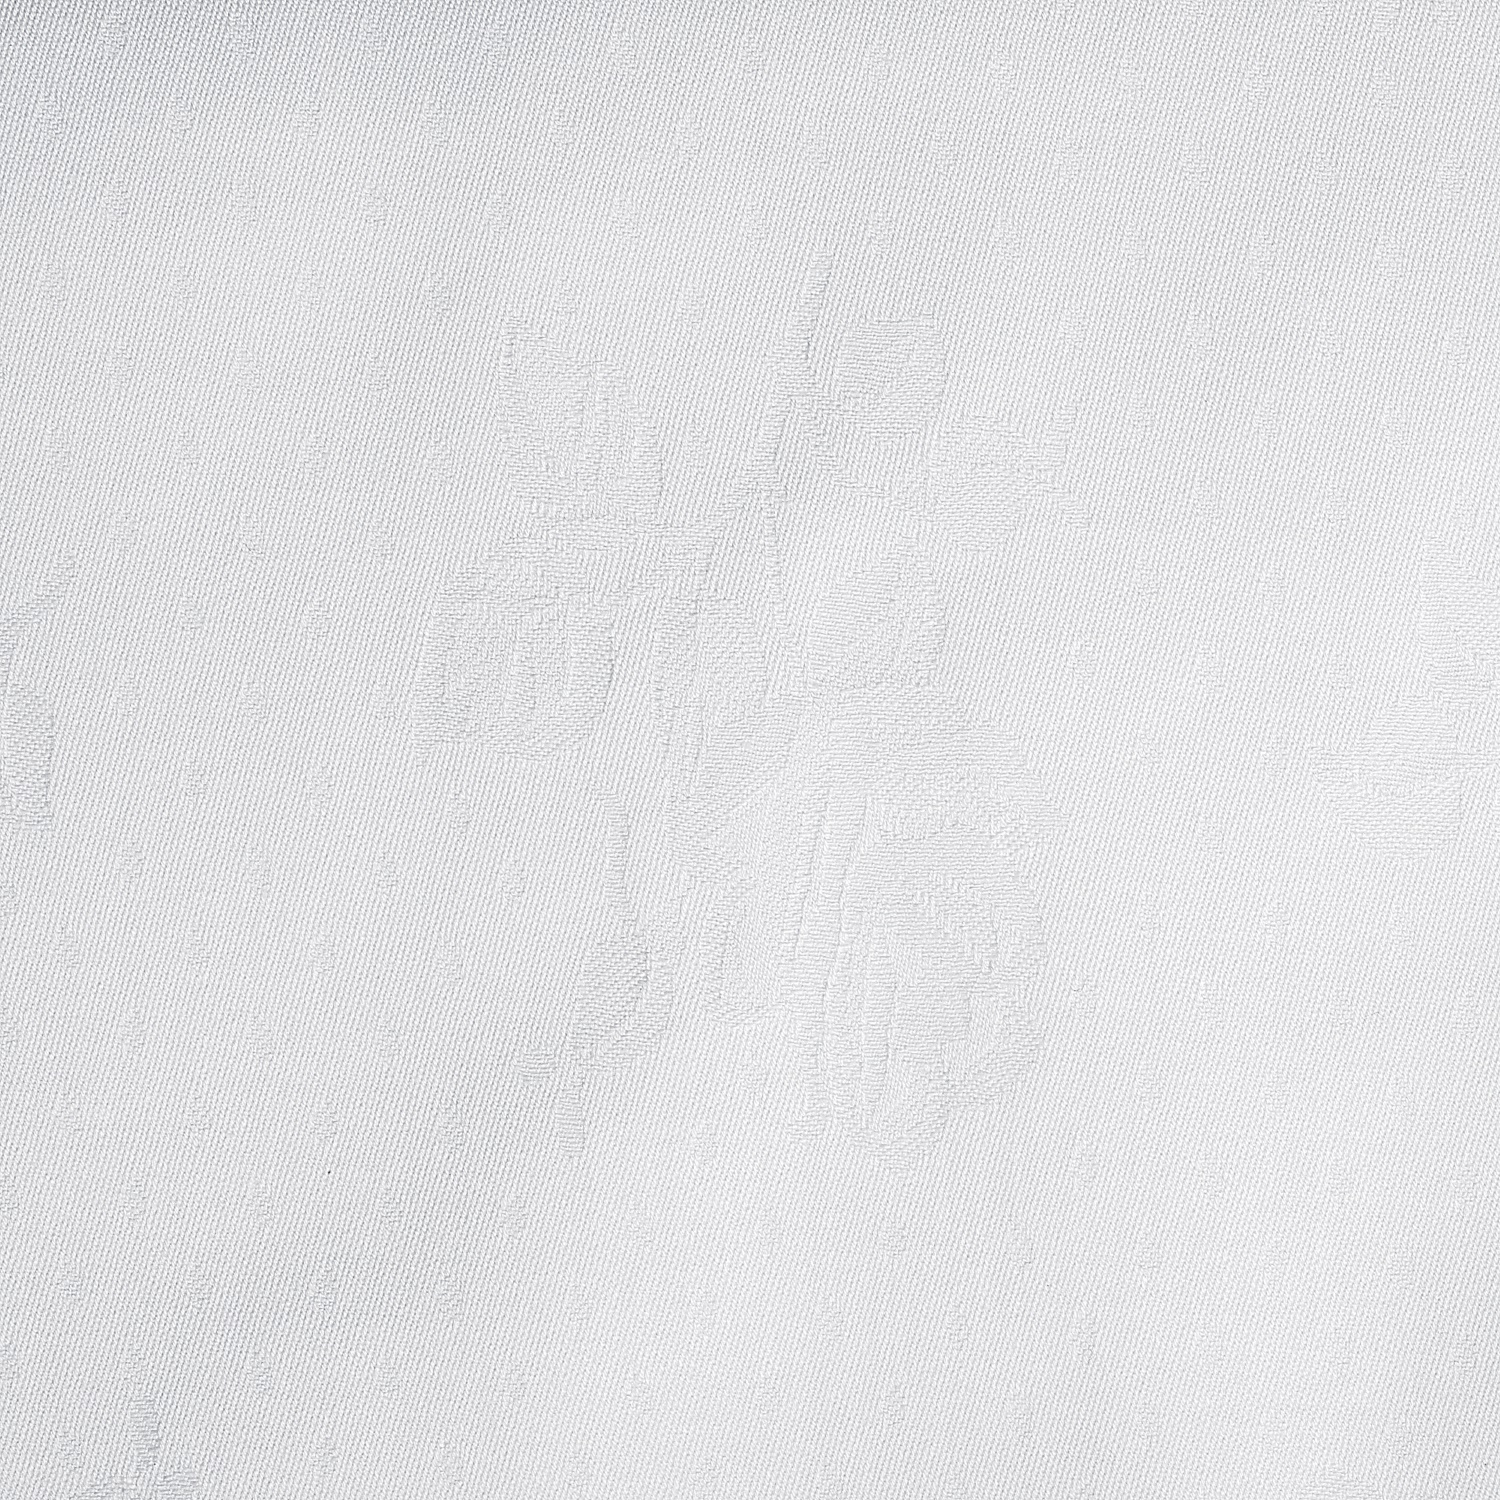 Damasttischdecke Rosenmuster weiß 80x80cm 